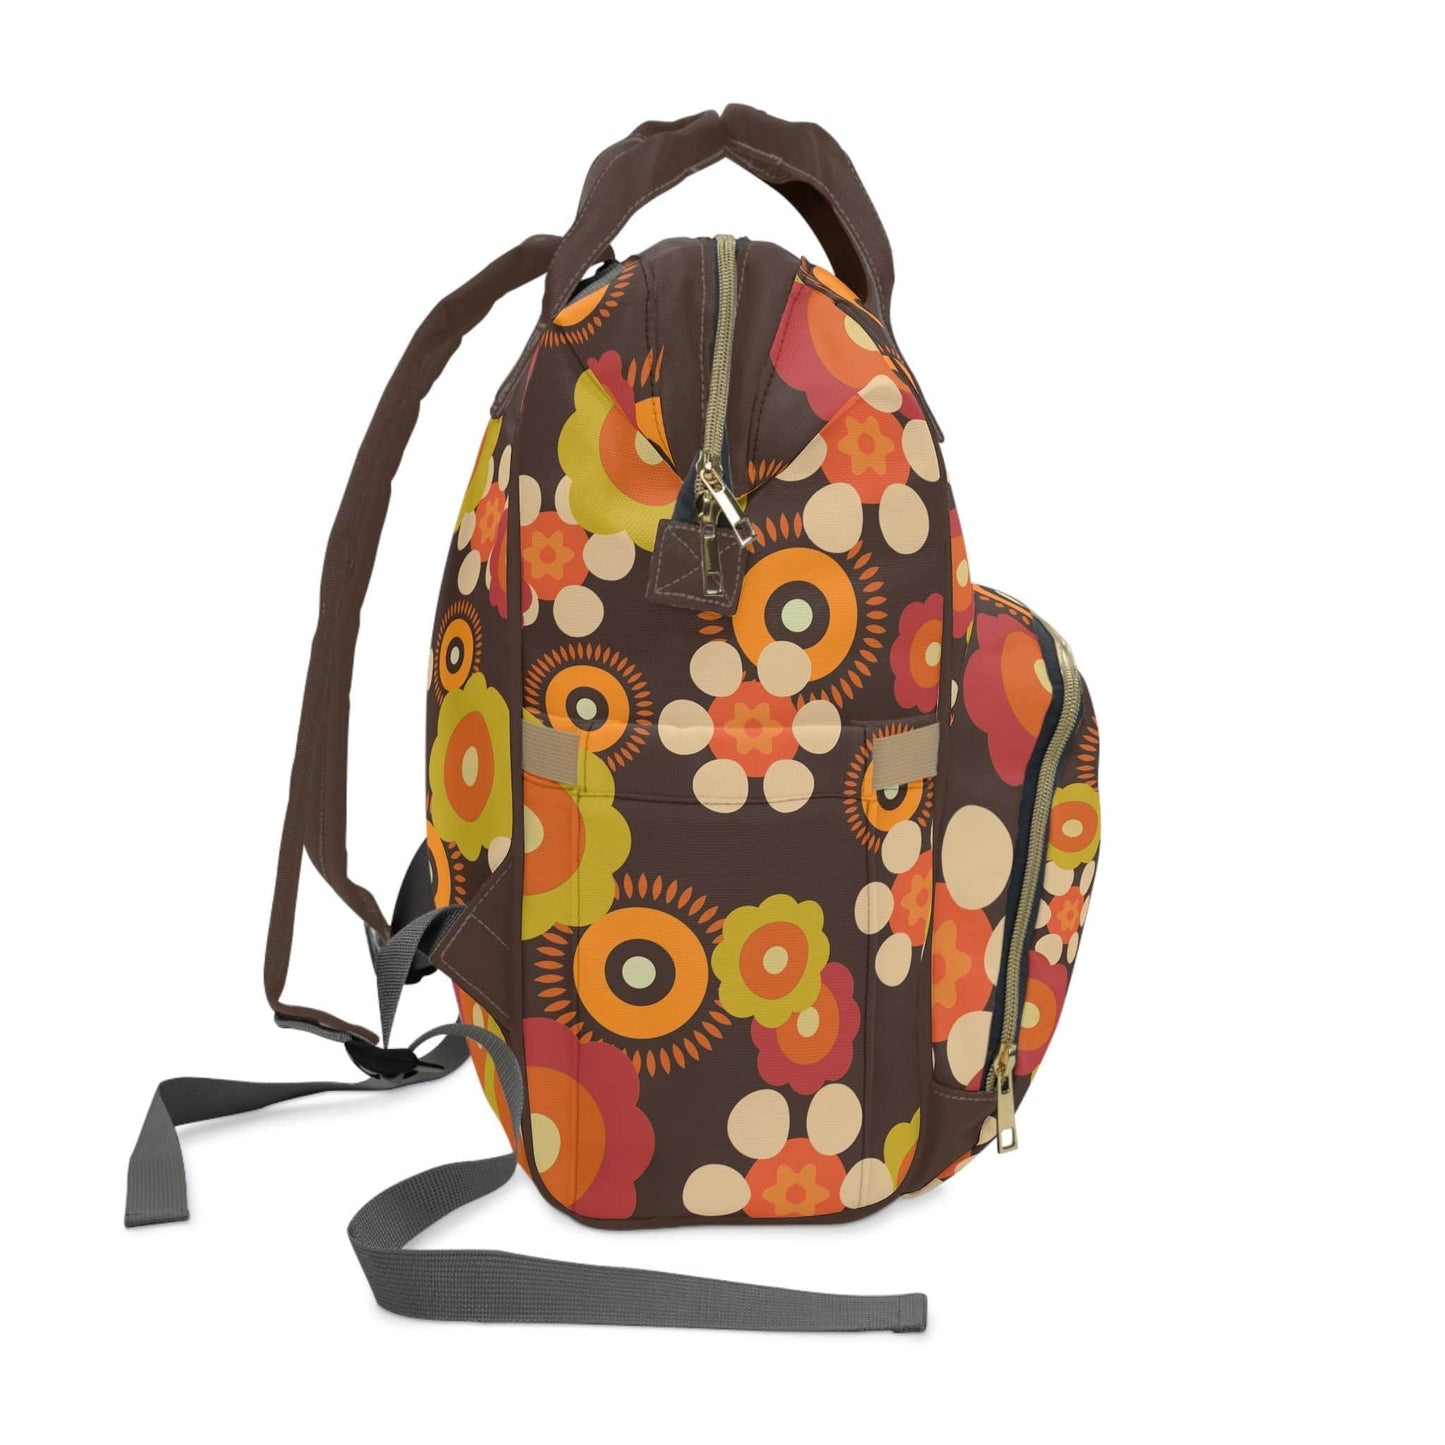 Kate McEnroe New York Retro Funky Groovy Hippie Boho Floral Multifunctional Backpack, Diaper Bag, Weekender Bag, Carry-on Luggage Bag, Multipurpose Backpack Diaper Bags 25833989005466094590